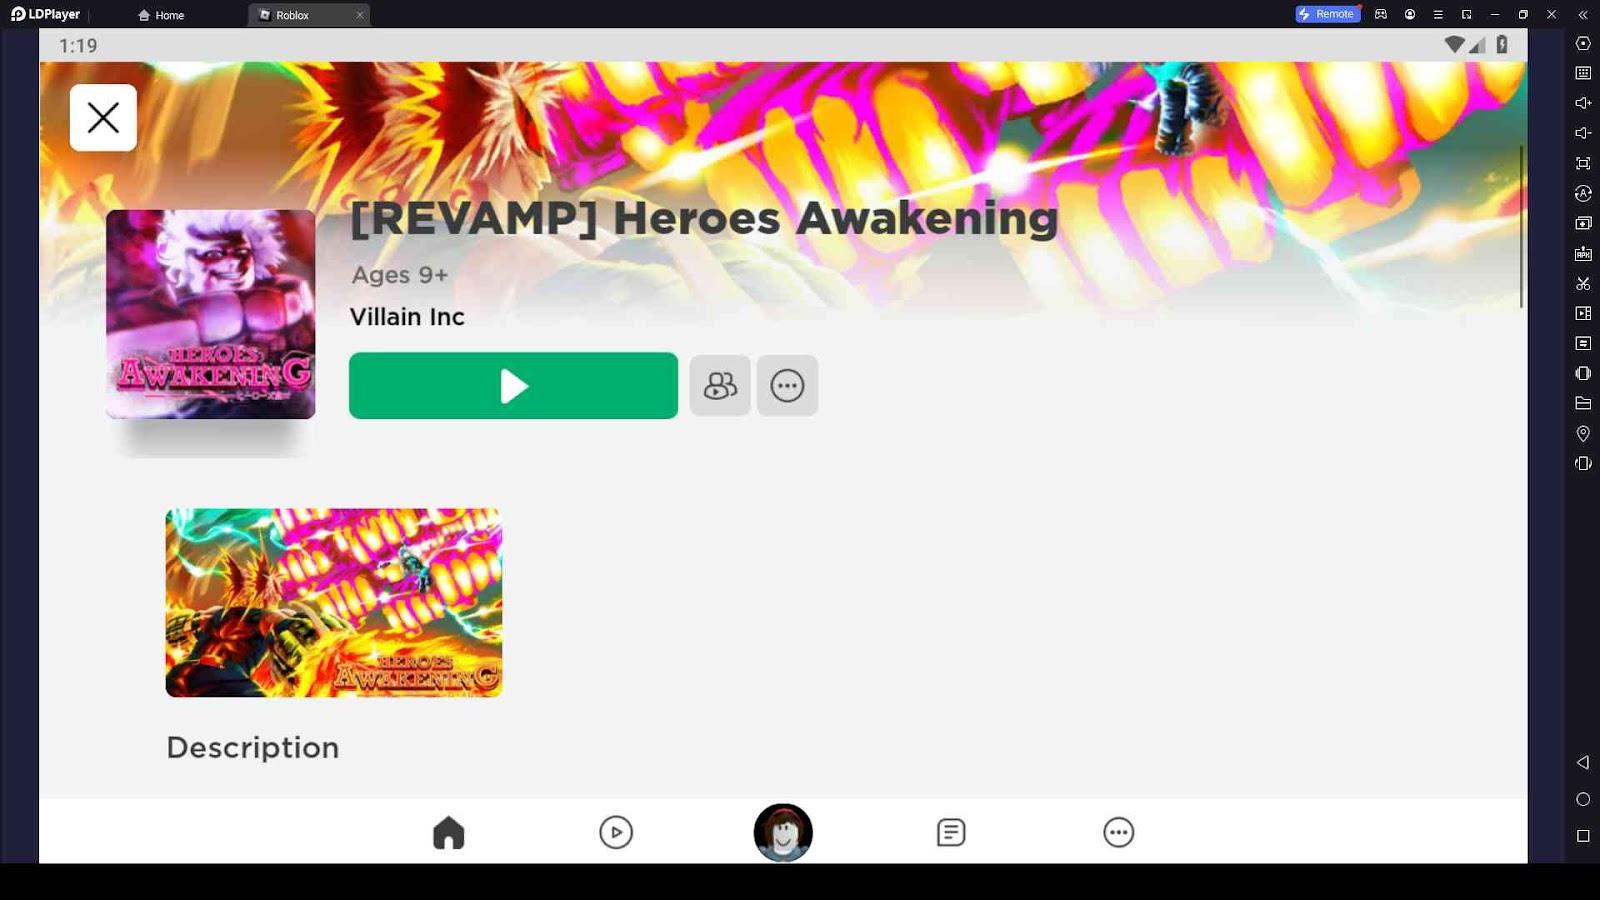 HALLOWEEN EVENT] Heroes Awakening - Roblox